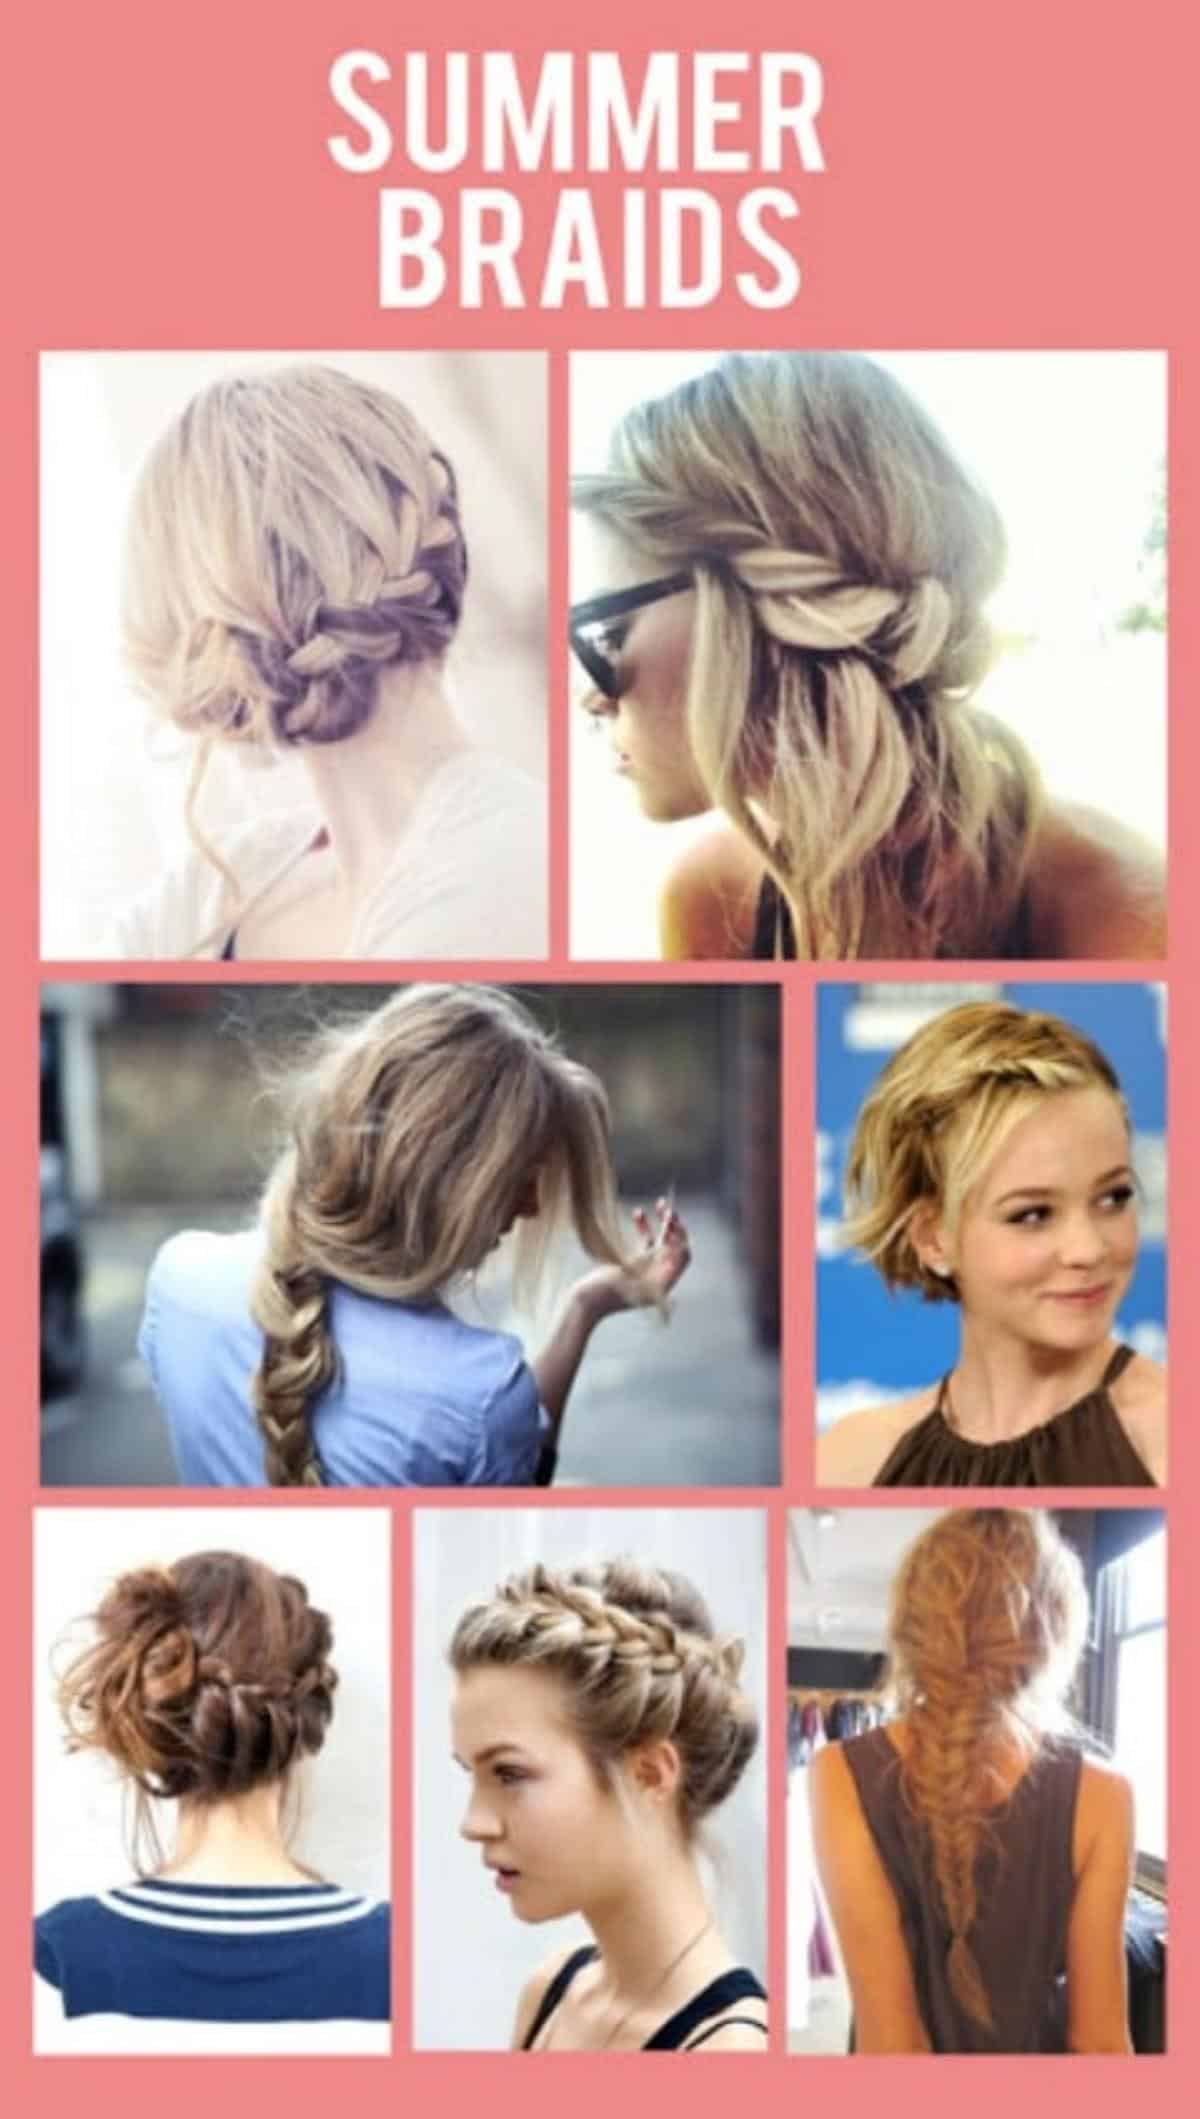 Summer braids collage.